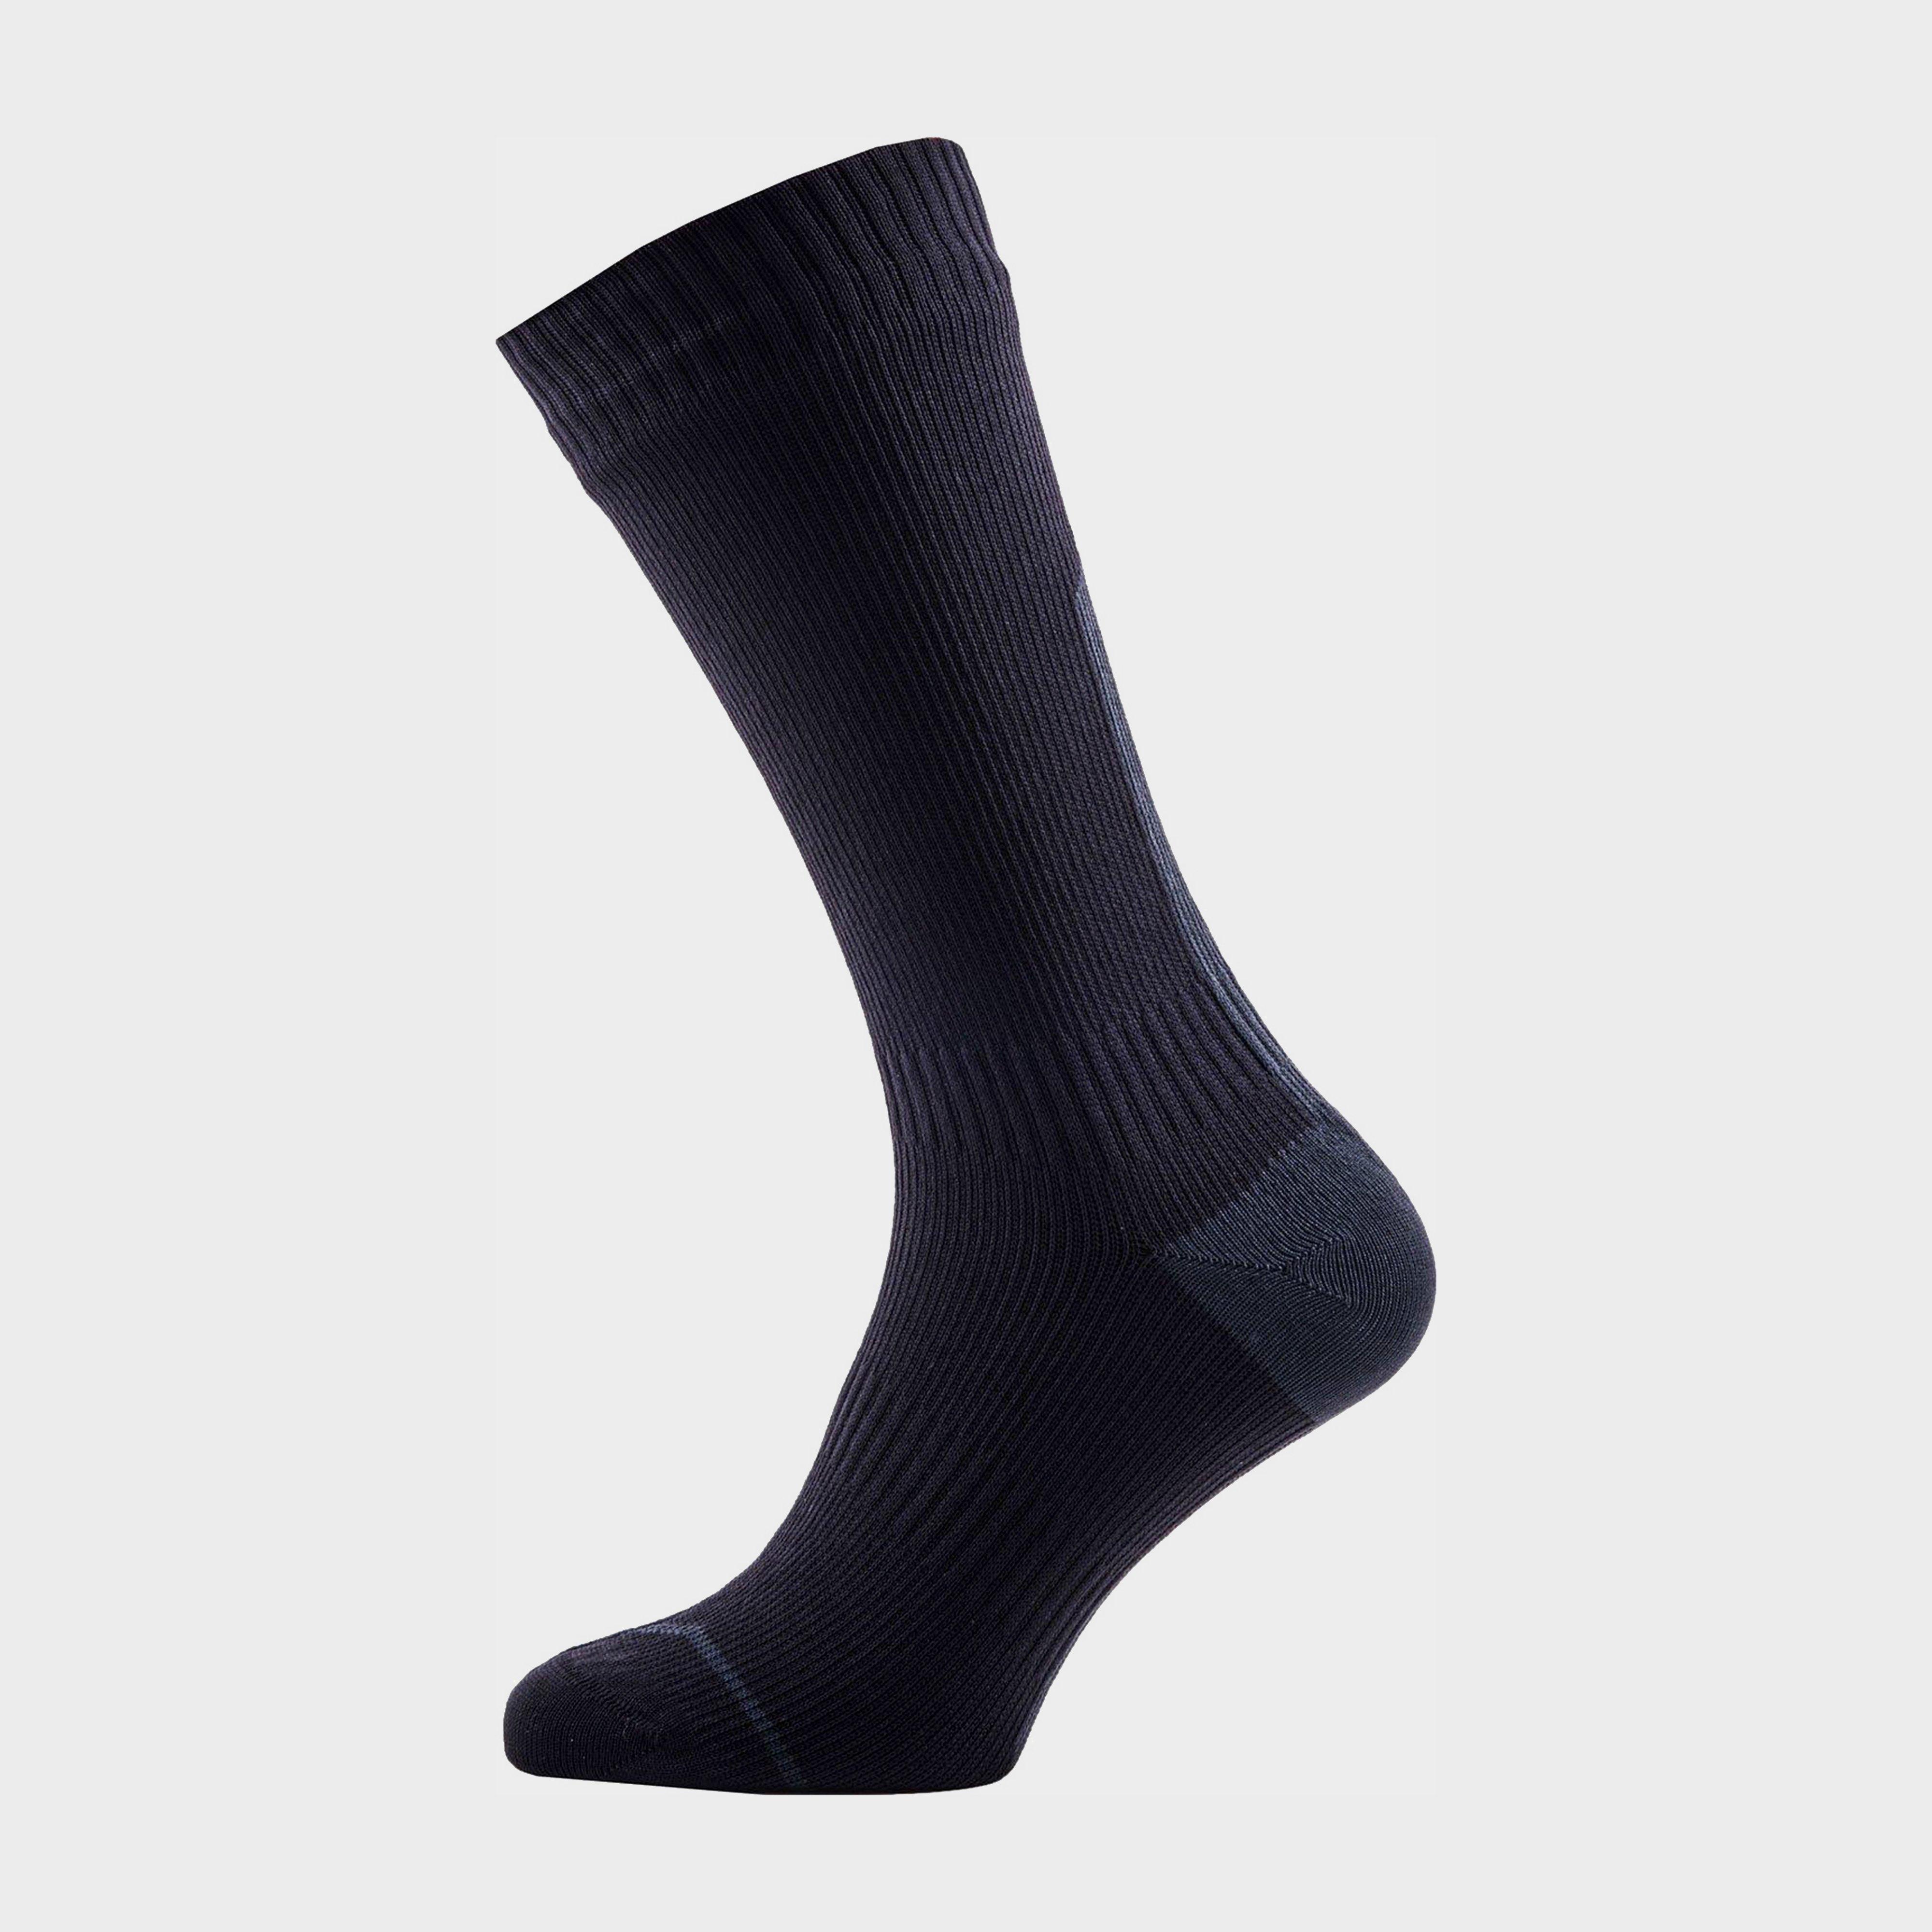 Sealskinz Thin Mid Hydrostop Waterproof Socks Review